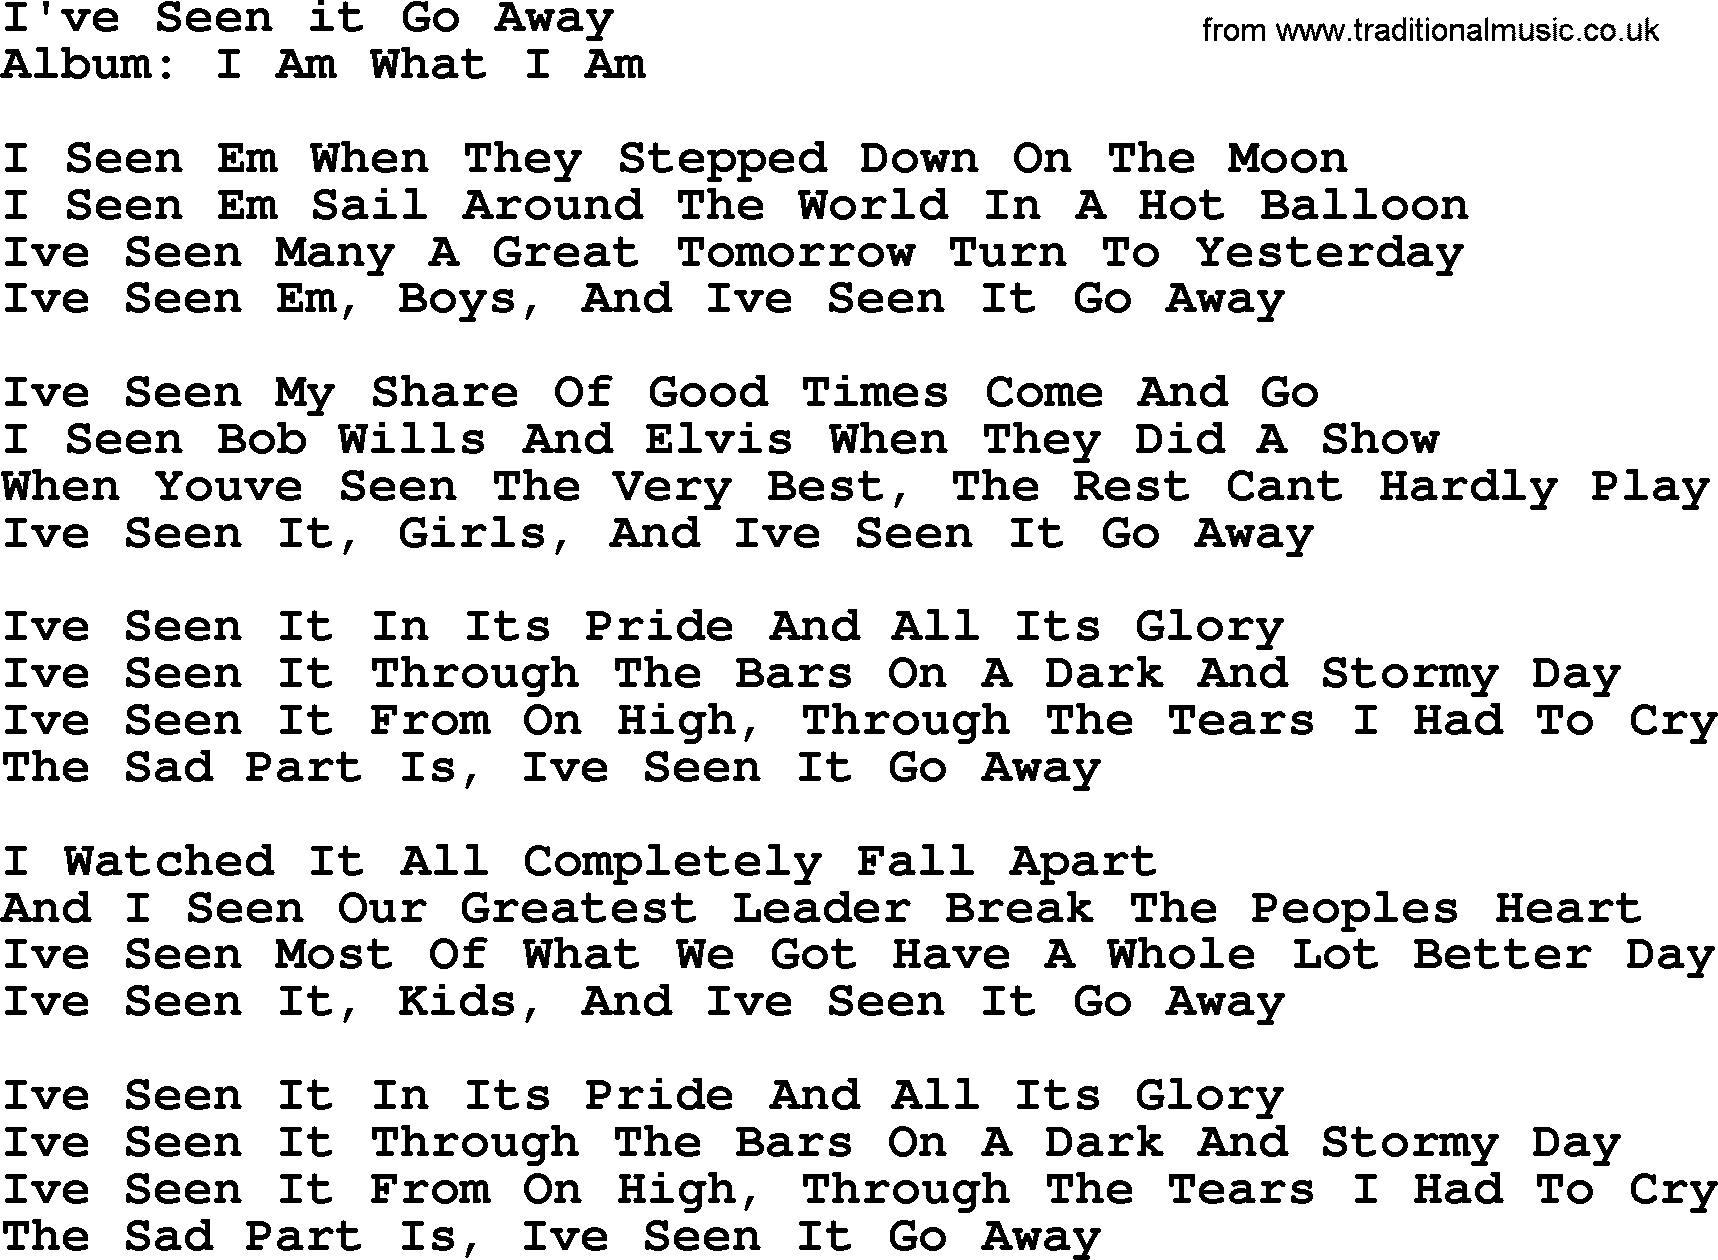 Merle Haggard song: I've Seen It Go Away, lyrics.